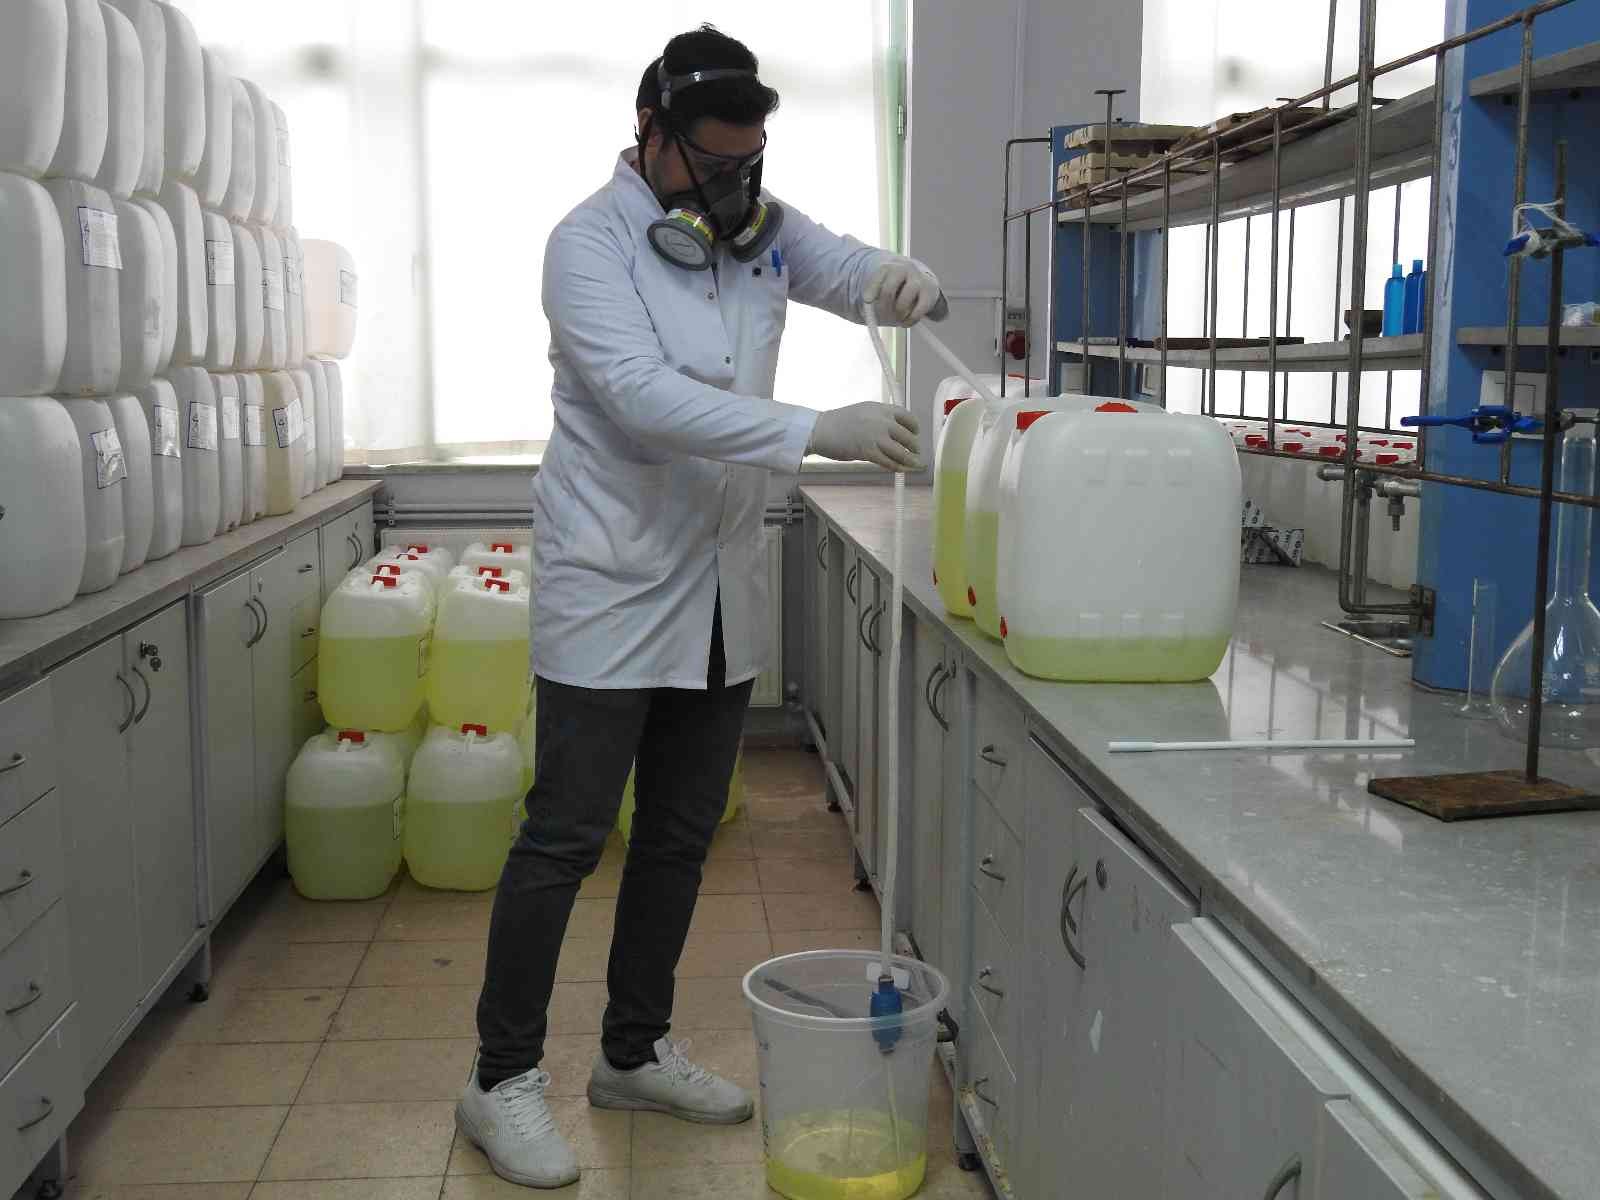 Üniversitede üretilen dezenfektanlar sayesinde 200 milyon lira cepte kaldı #edirne